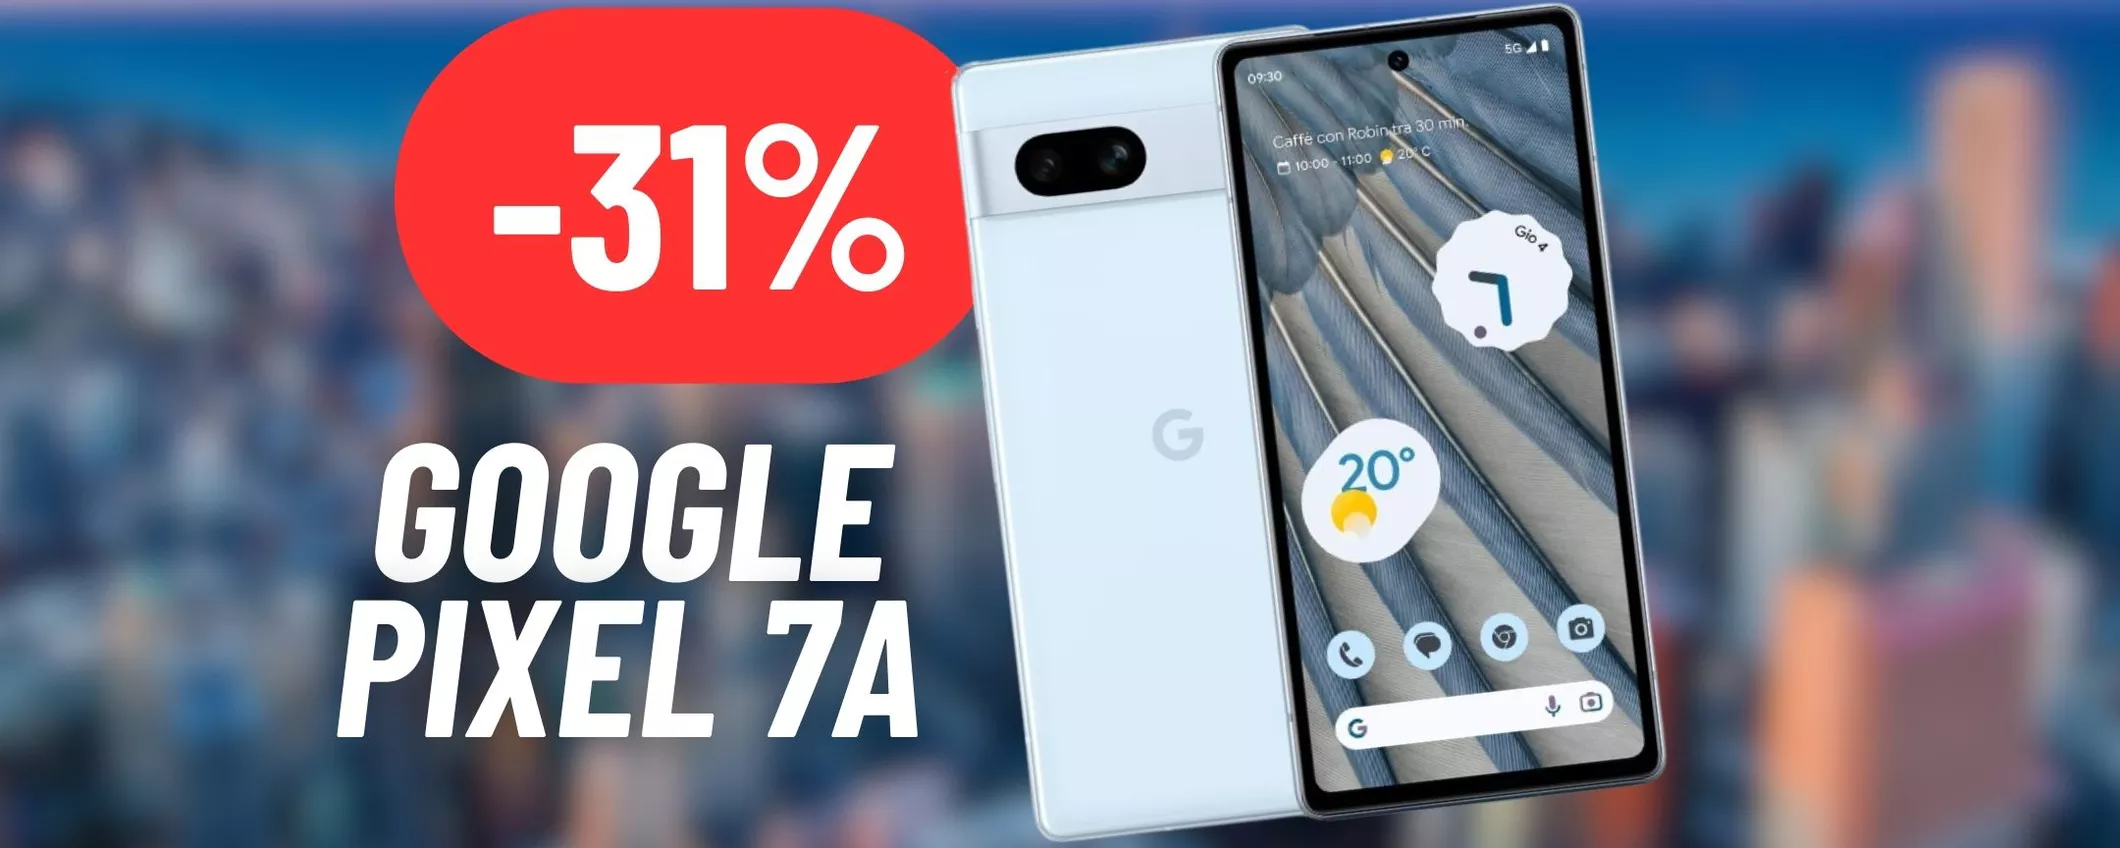 CALA A PICCO IL PREZZO del Google Pixel 7a su Amazon: offerta imperdibile